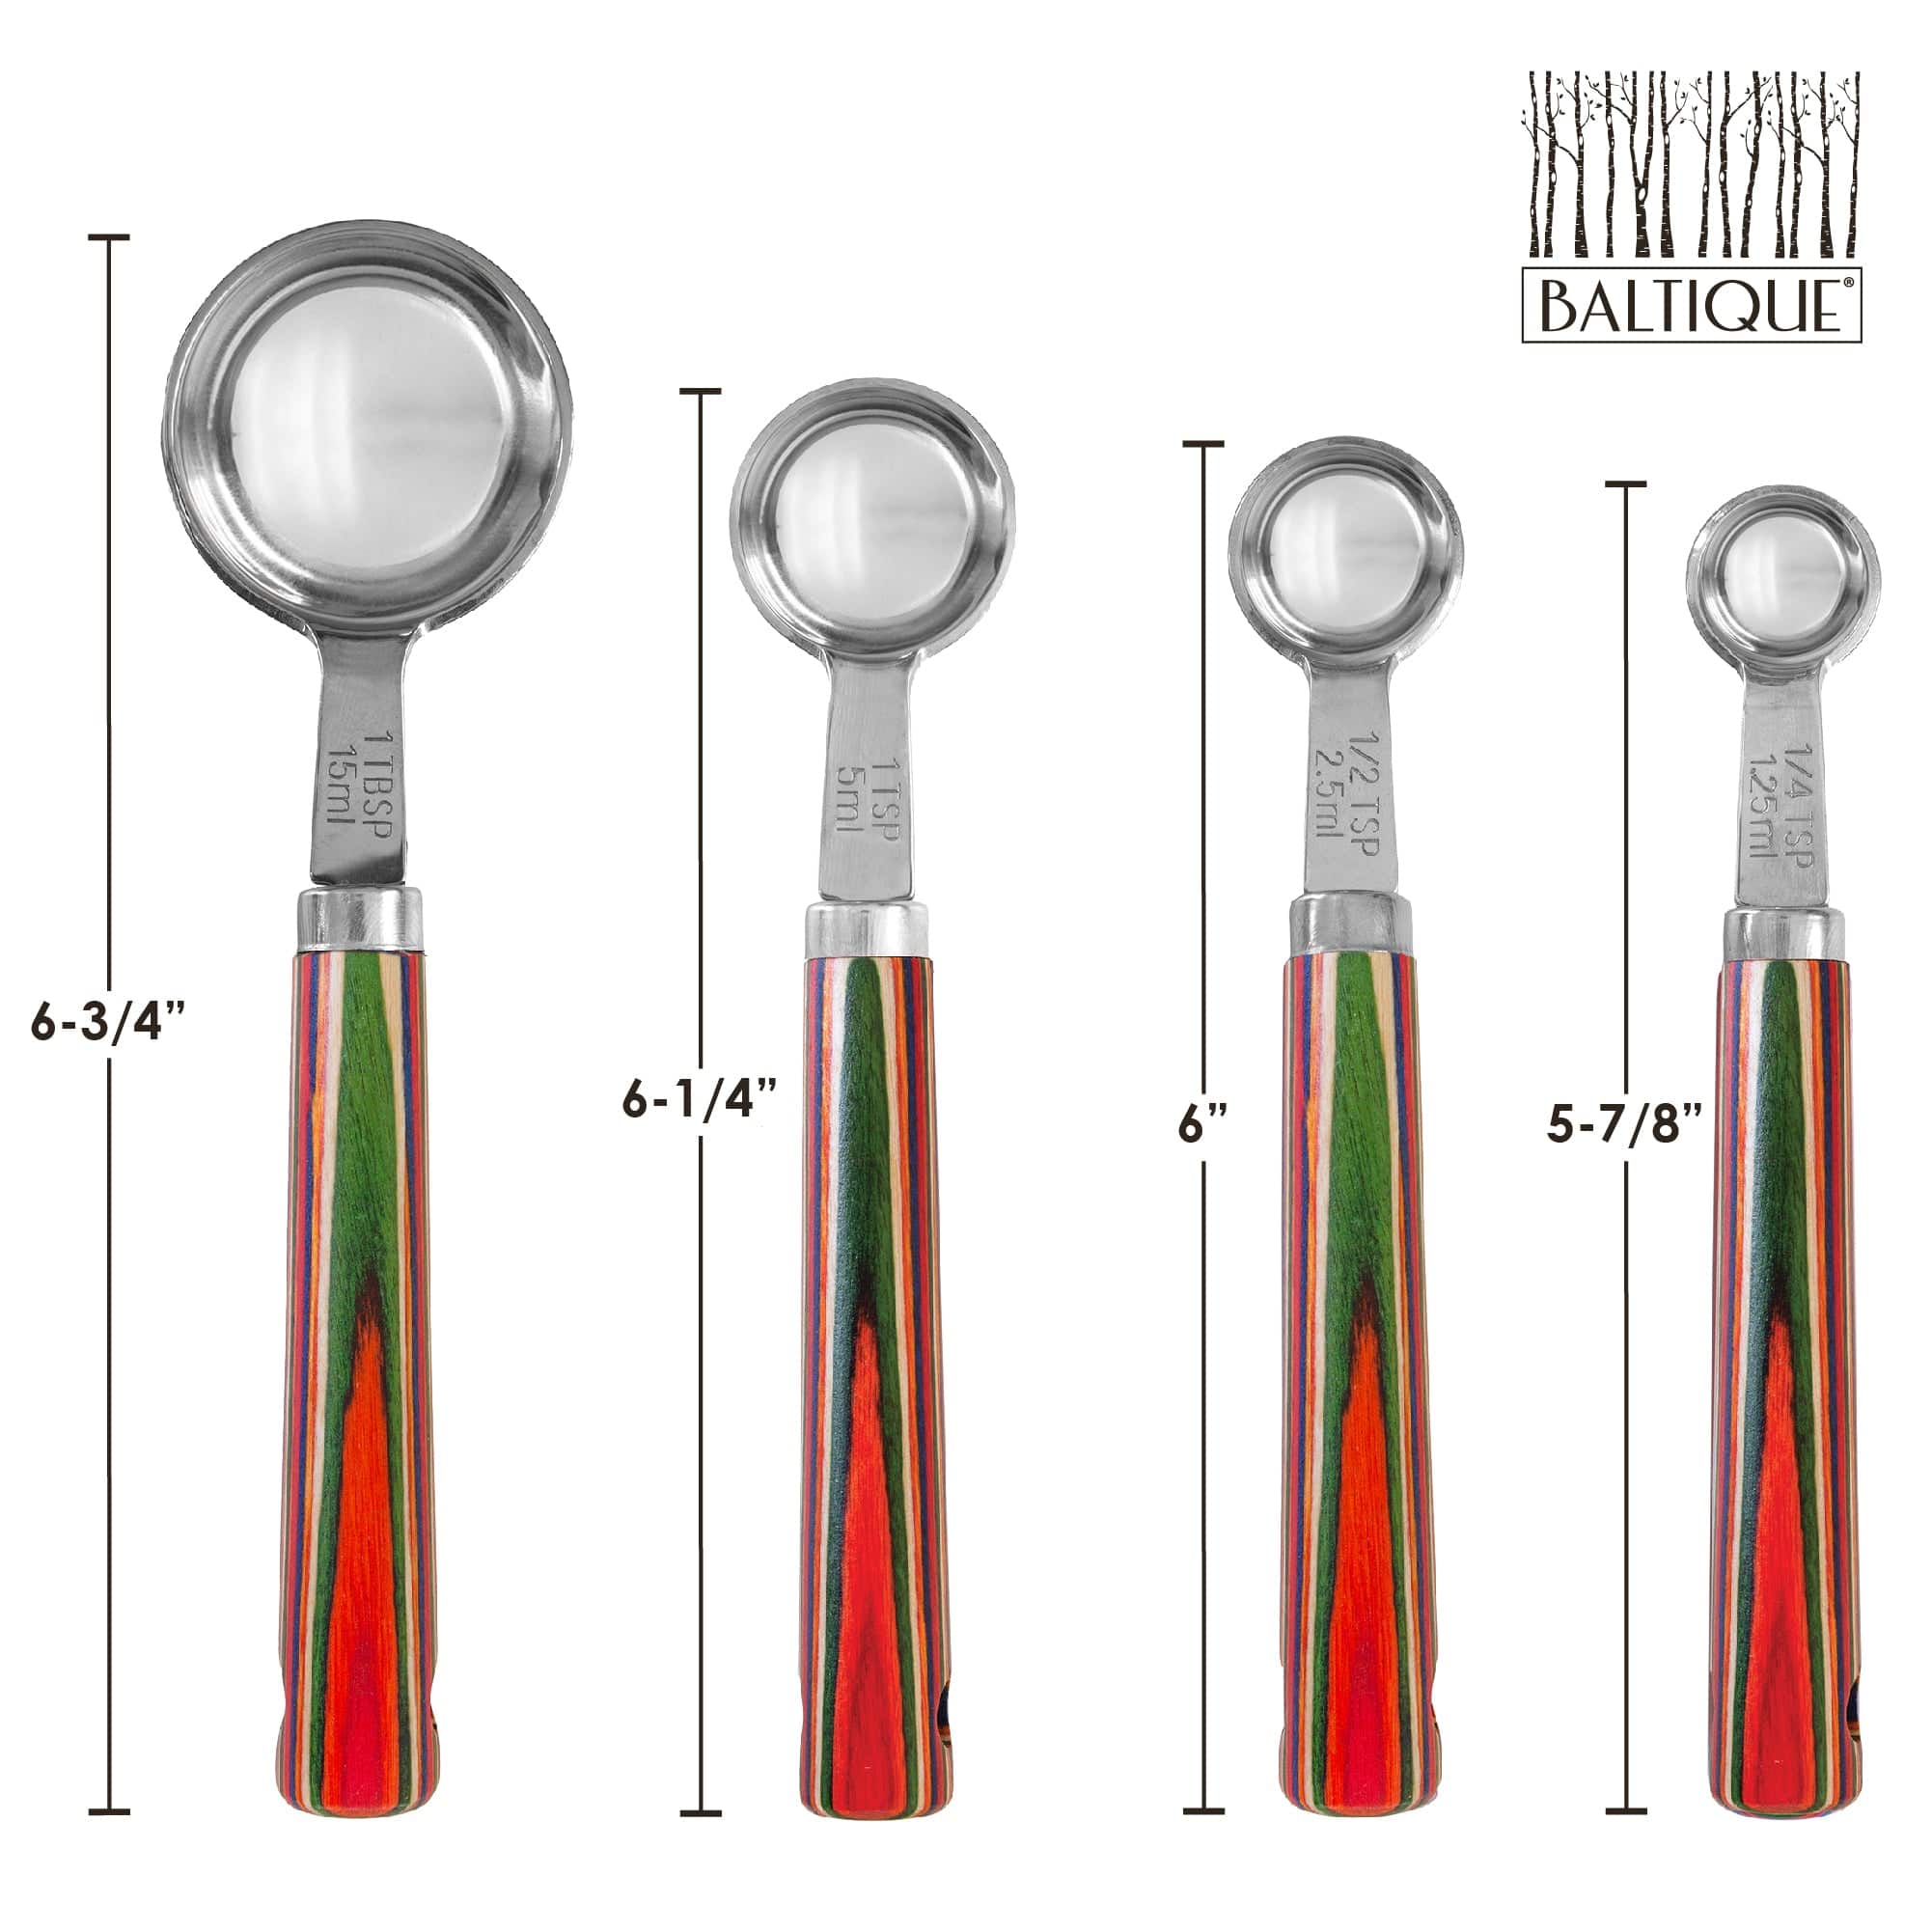 Totally Bamboo Baltique Mumbai Collection 2-in-1 Measuring Spoon